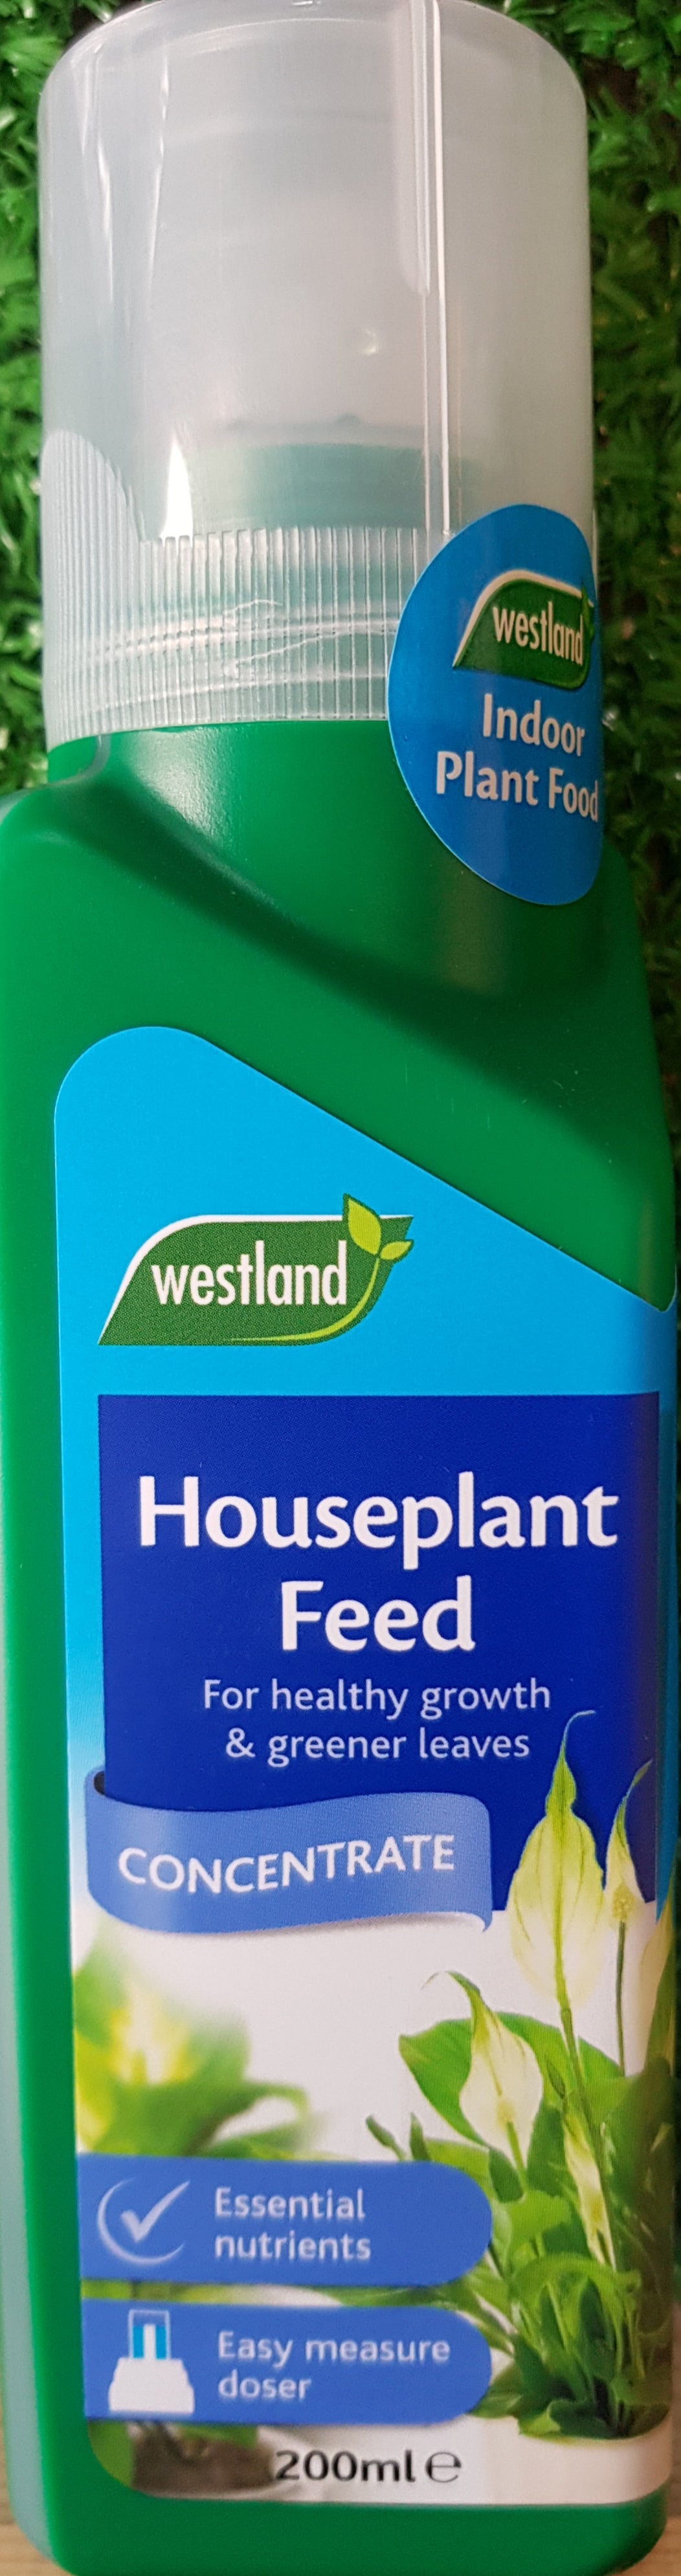 Houseplant Feed